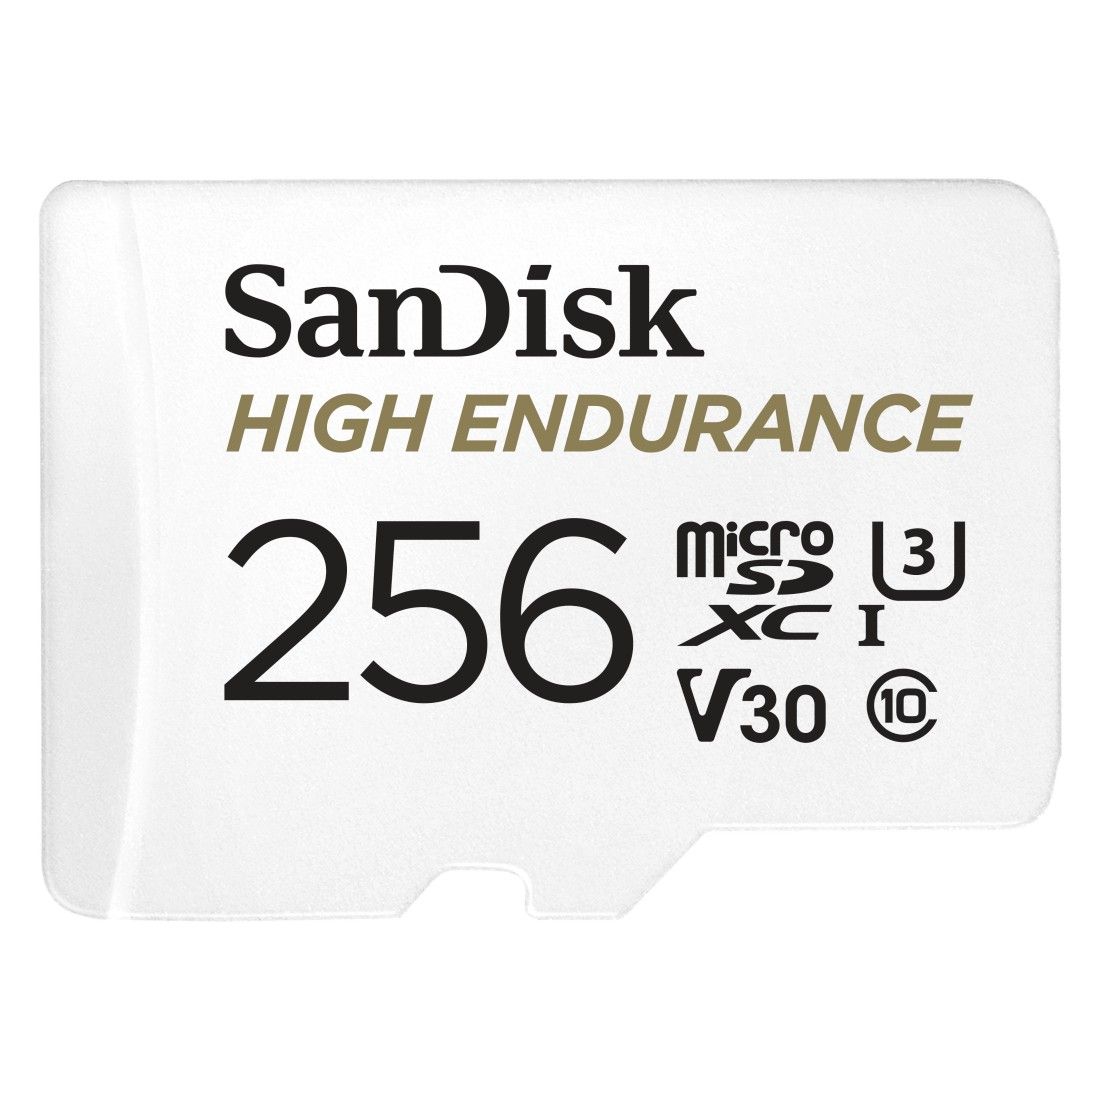 SanDisk microSDXC™ 256GB memóriakártya, High Endurance (olvasási sebesség: 100 MB/s, írási sebesség: 40 MB/s) V30, A2, C10, U3, Full HD, 4K